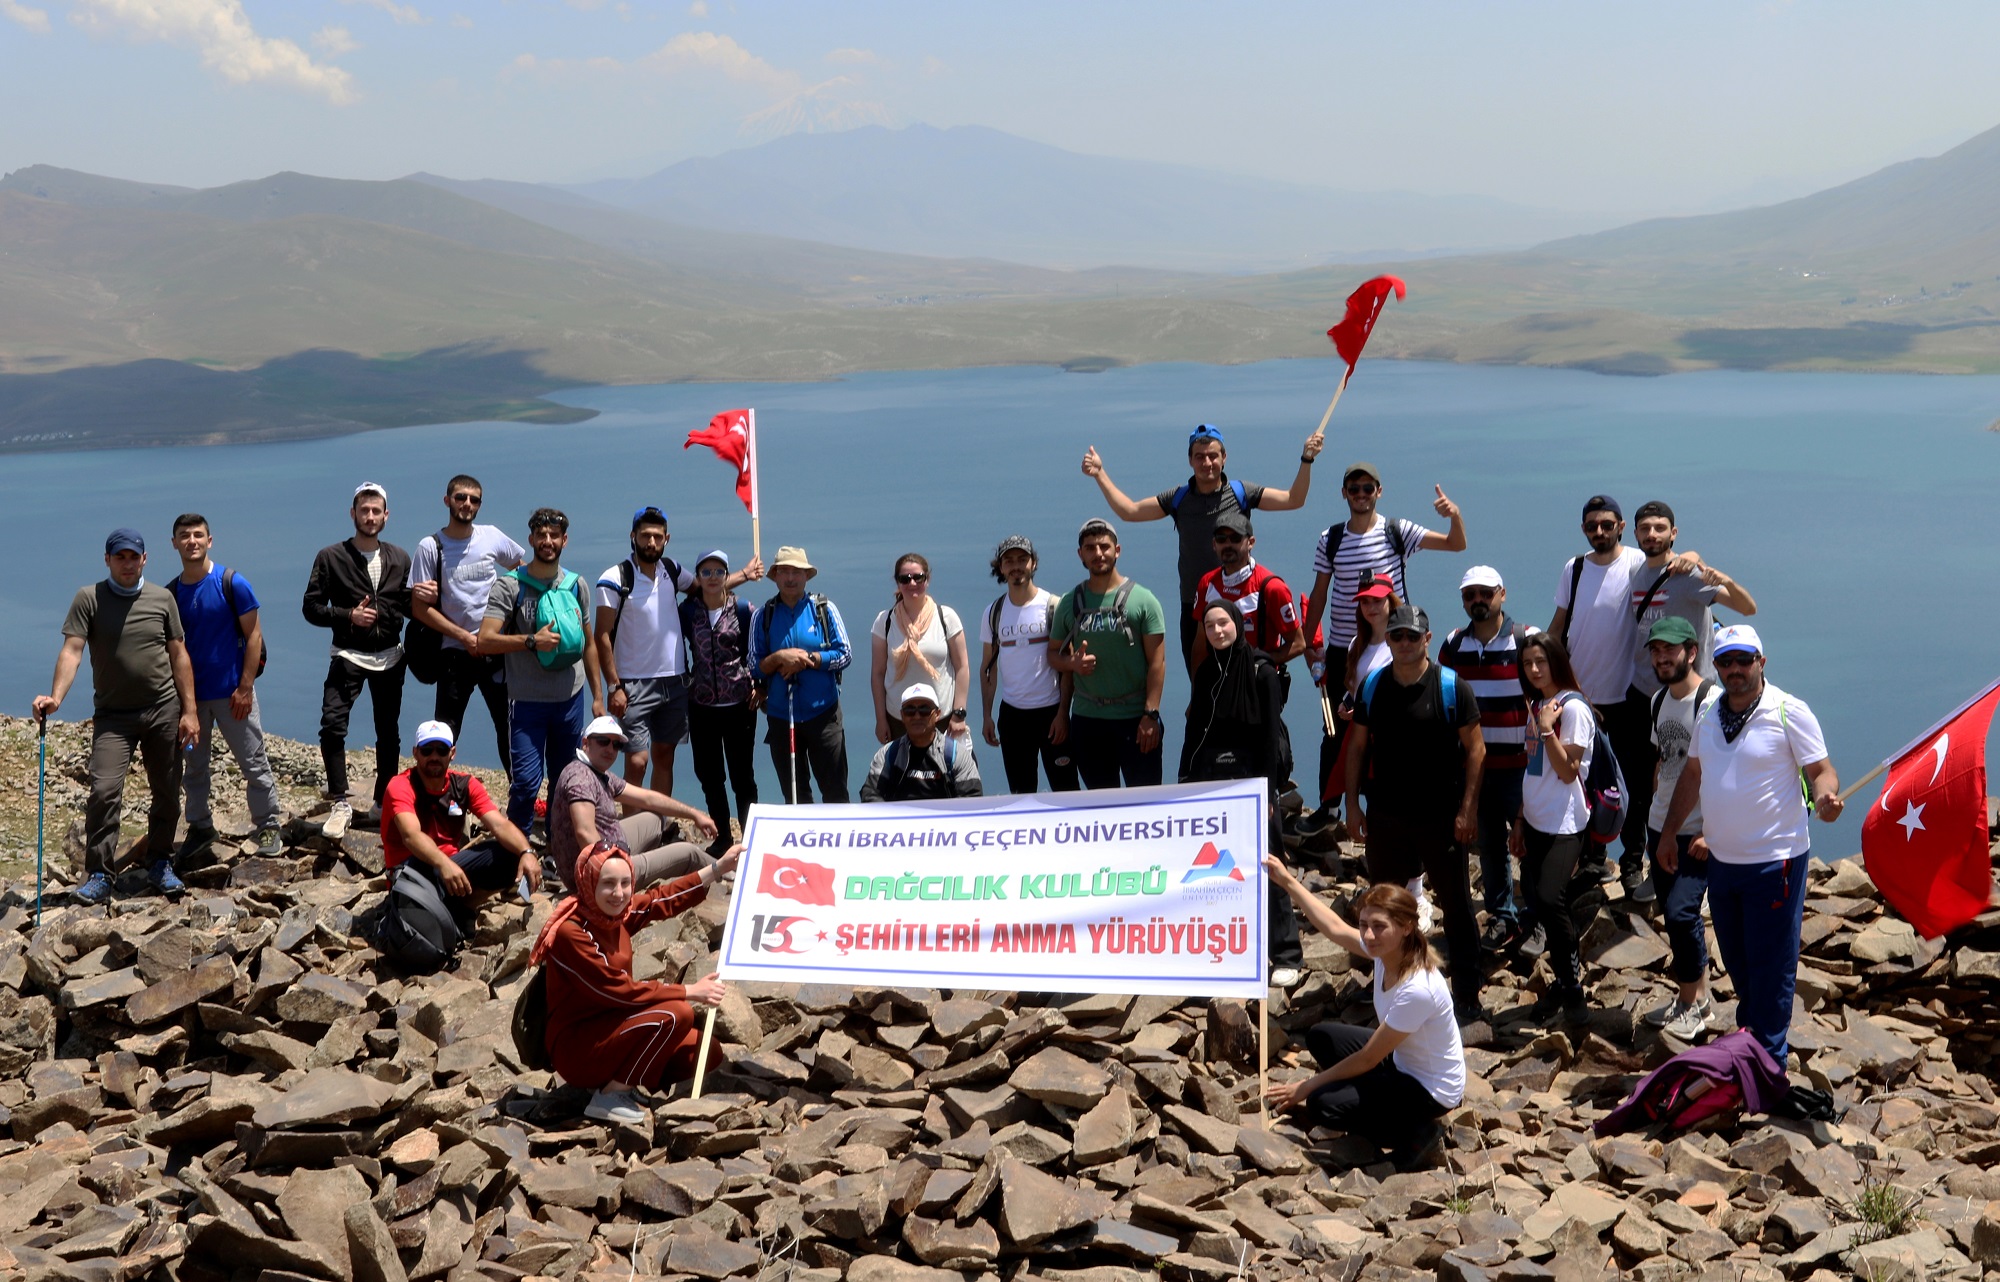 AİÇÜ’de 15 Temmuz Demokrasi ve Milli Birlik Günü Kapsamında Dağ Tırmanışı Gerçekleştirildi